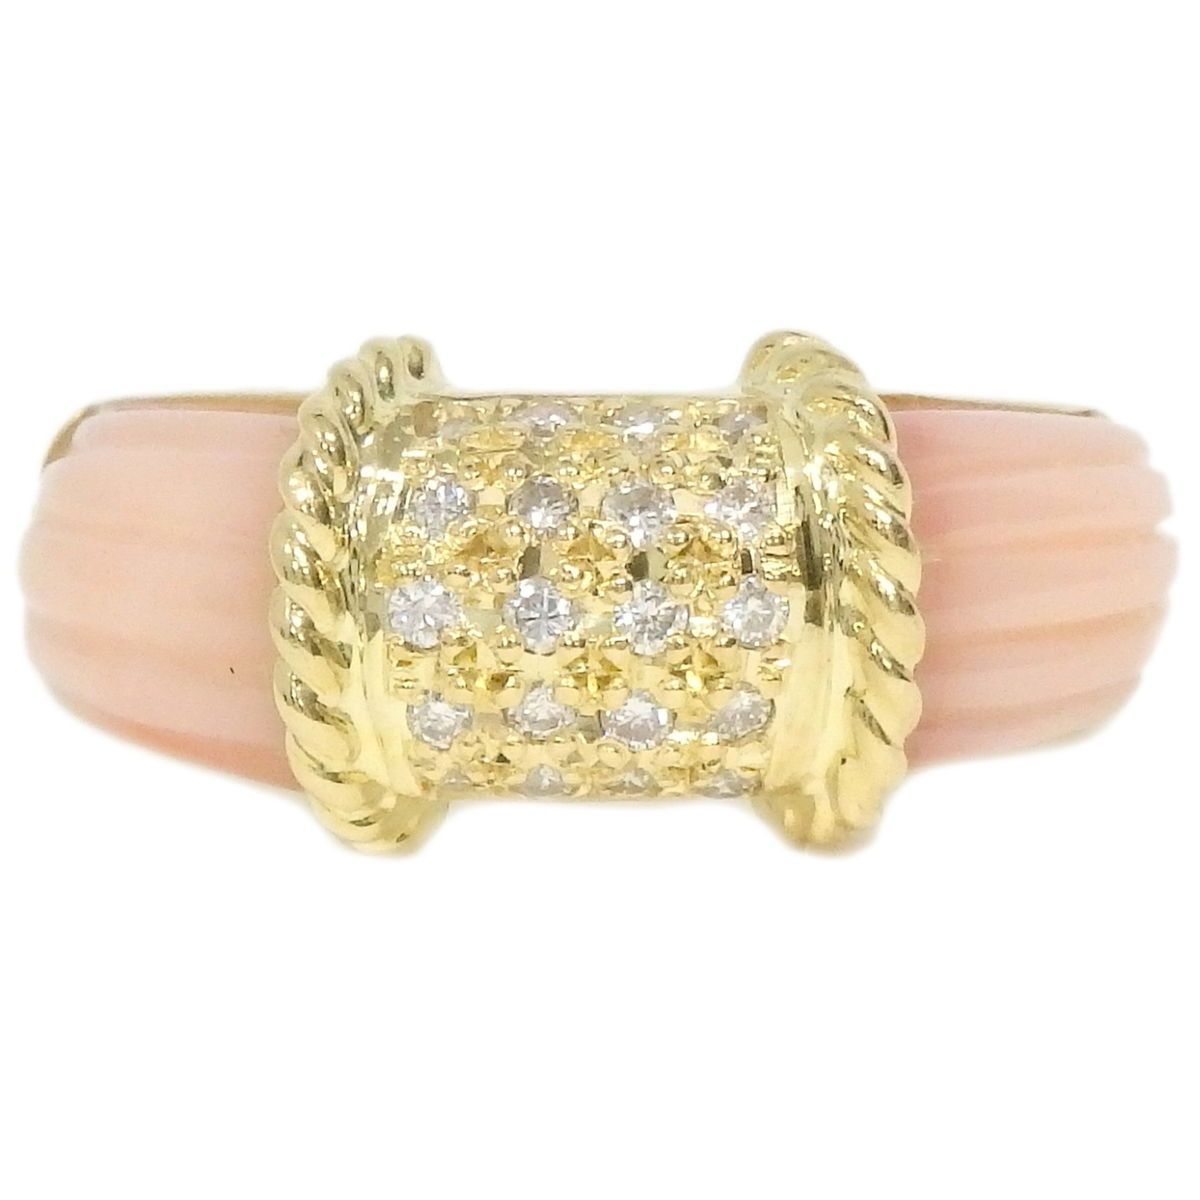 リング(指輪)本物 珊瑚 サンゴ ダイヤモンド 0.20ct K18 YG リング 指輪 12号 イエローゴールド ピンク ジュエリー アクセサリー